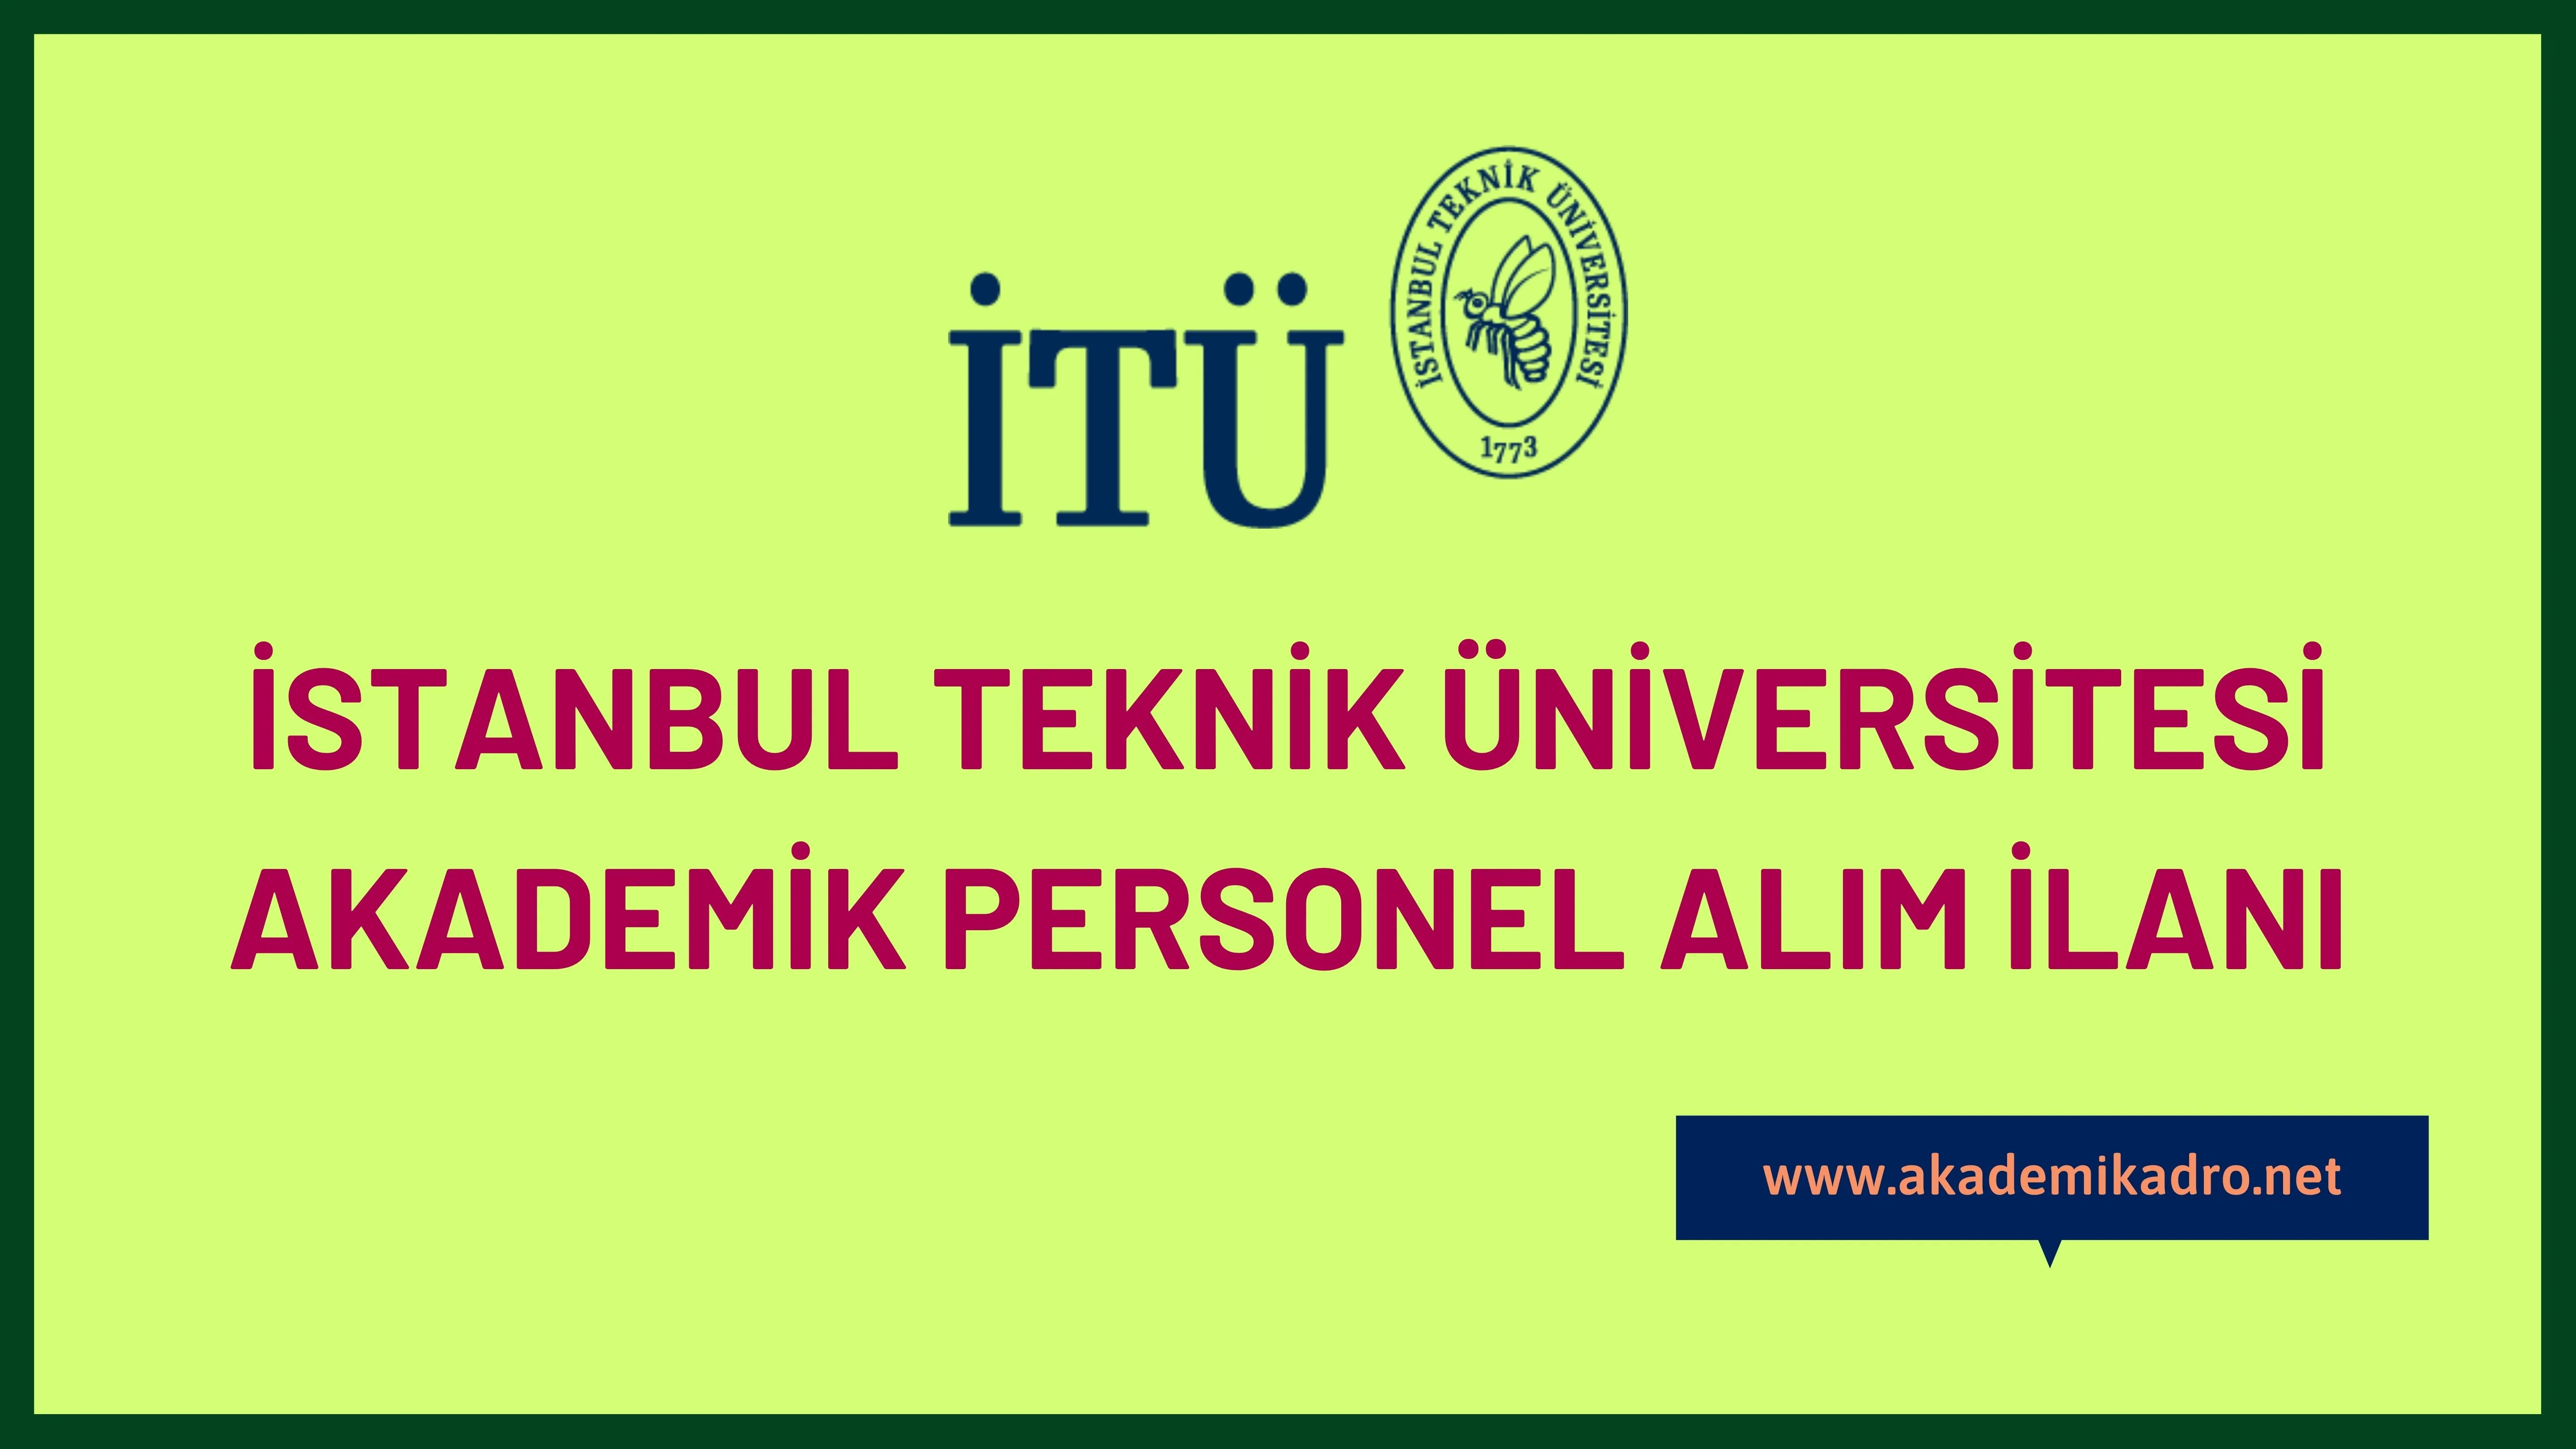 İstanbul Teknik Üniversitesi birçok alandan 60 akademik personel alacak.